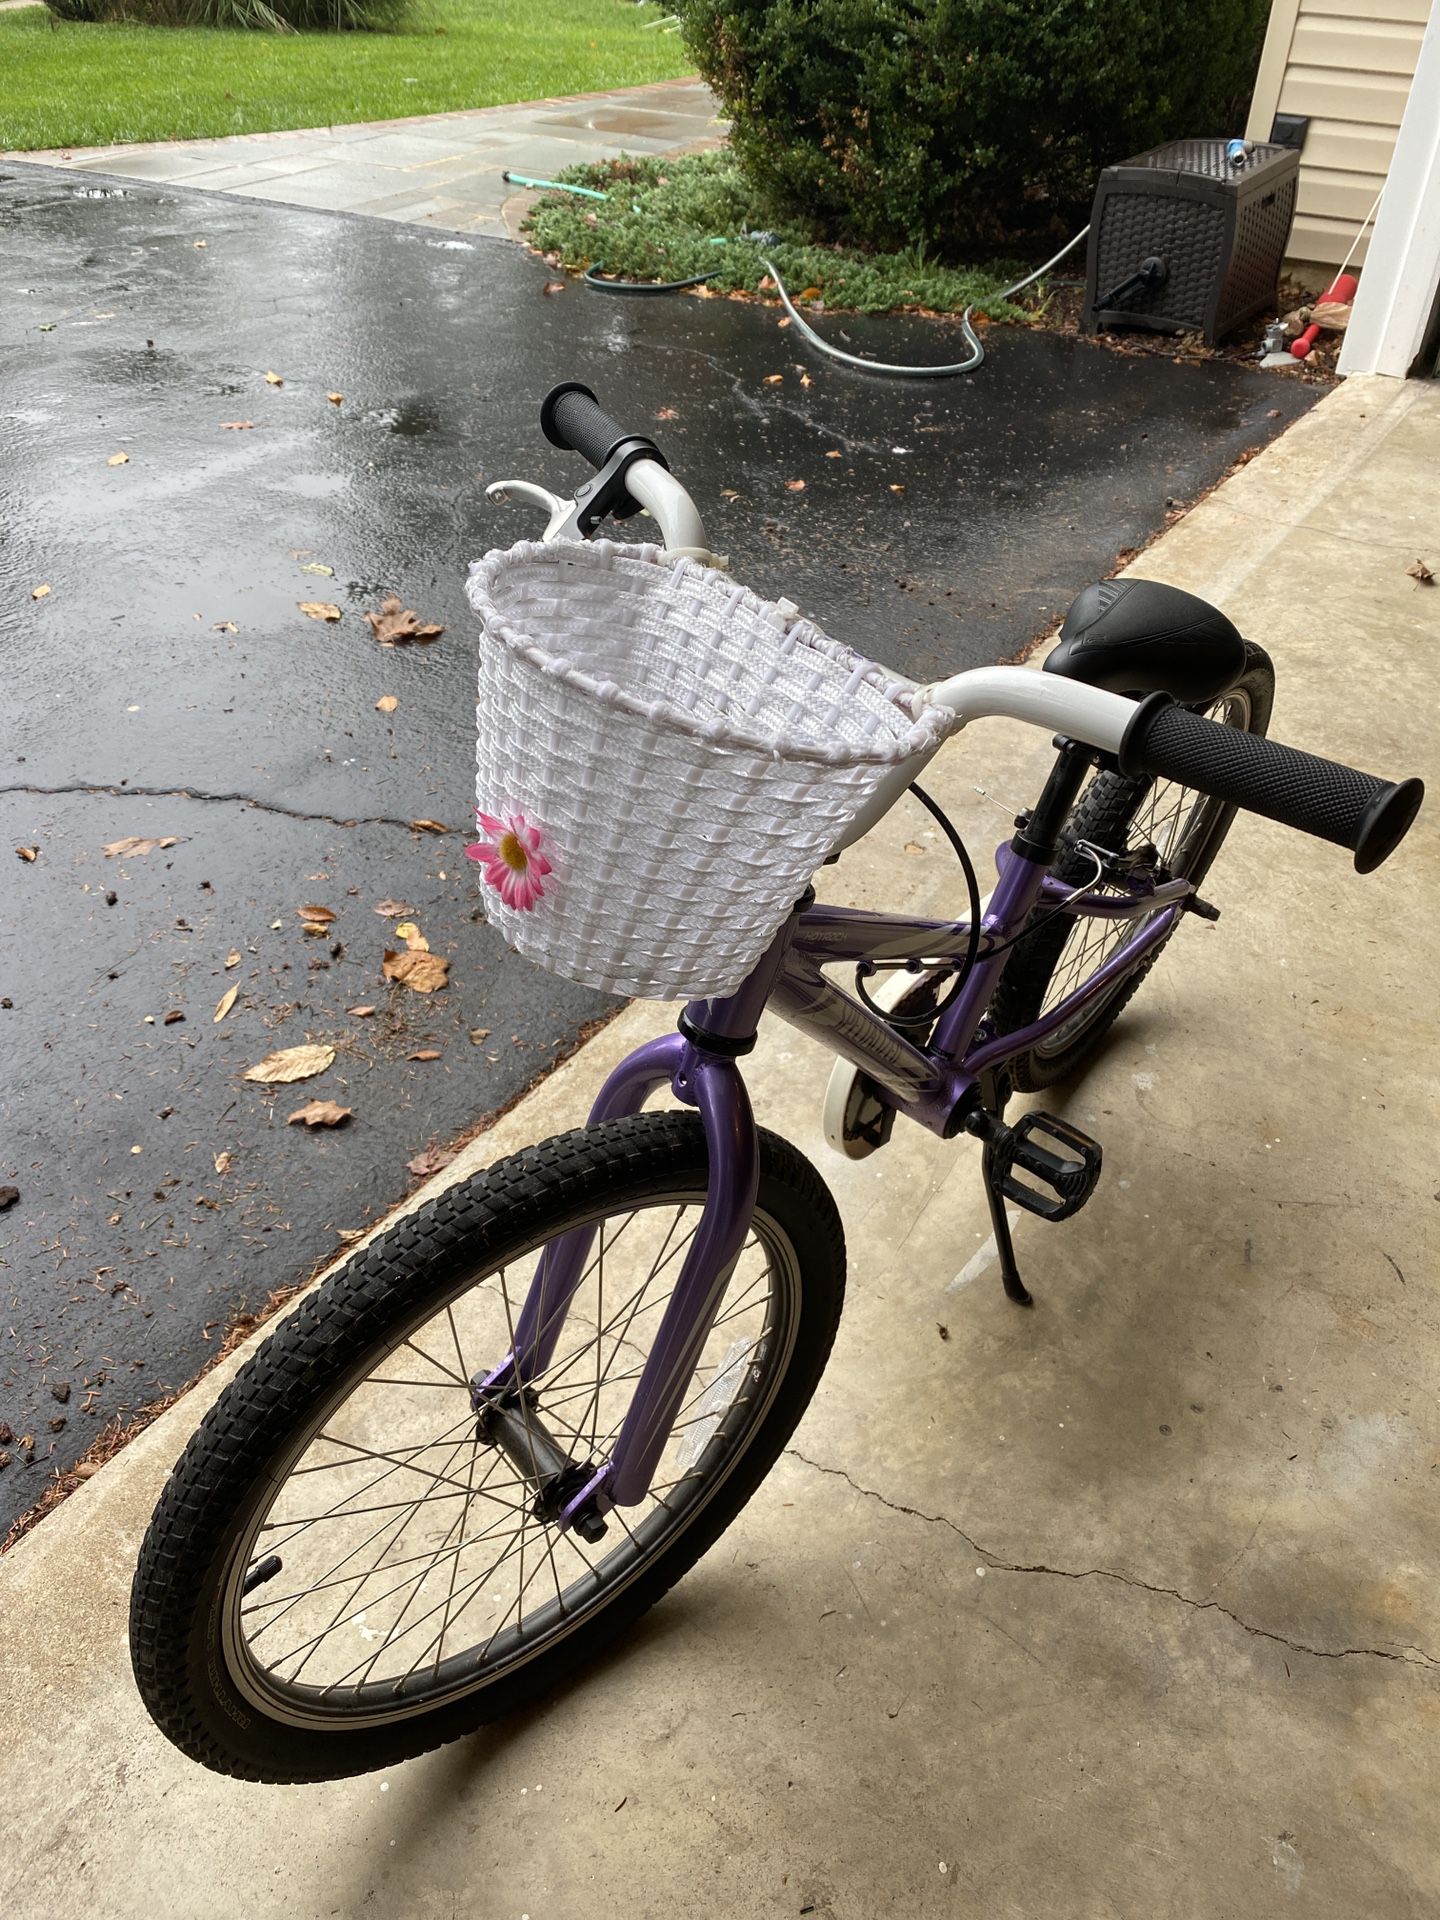 Girls 20” Specialized Bike